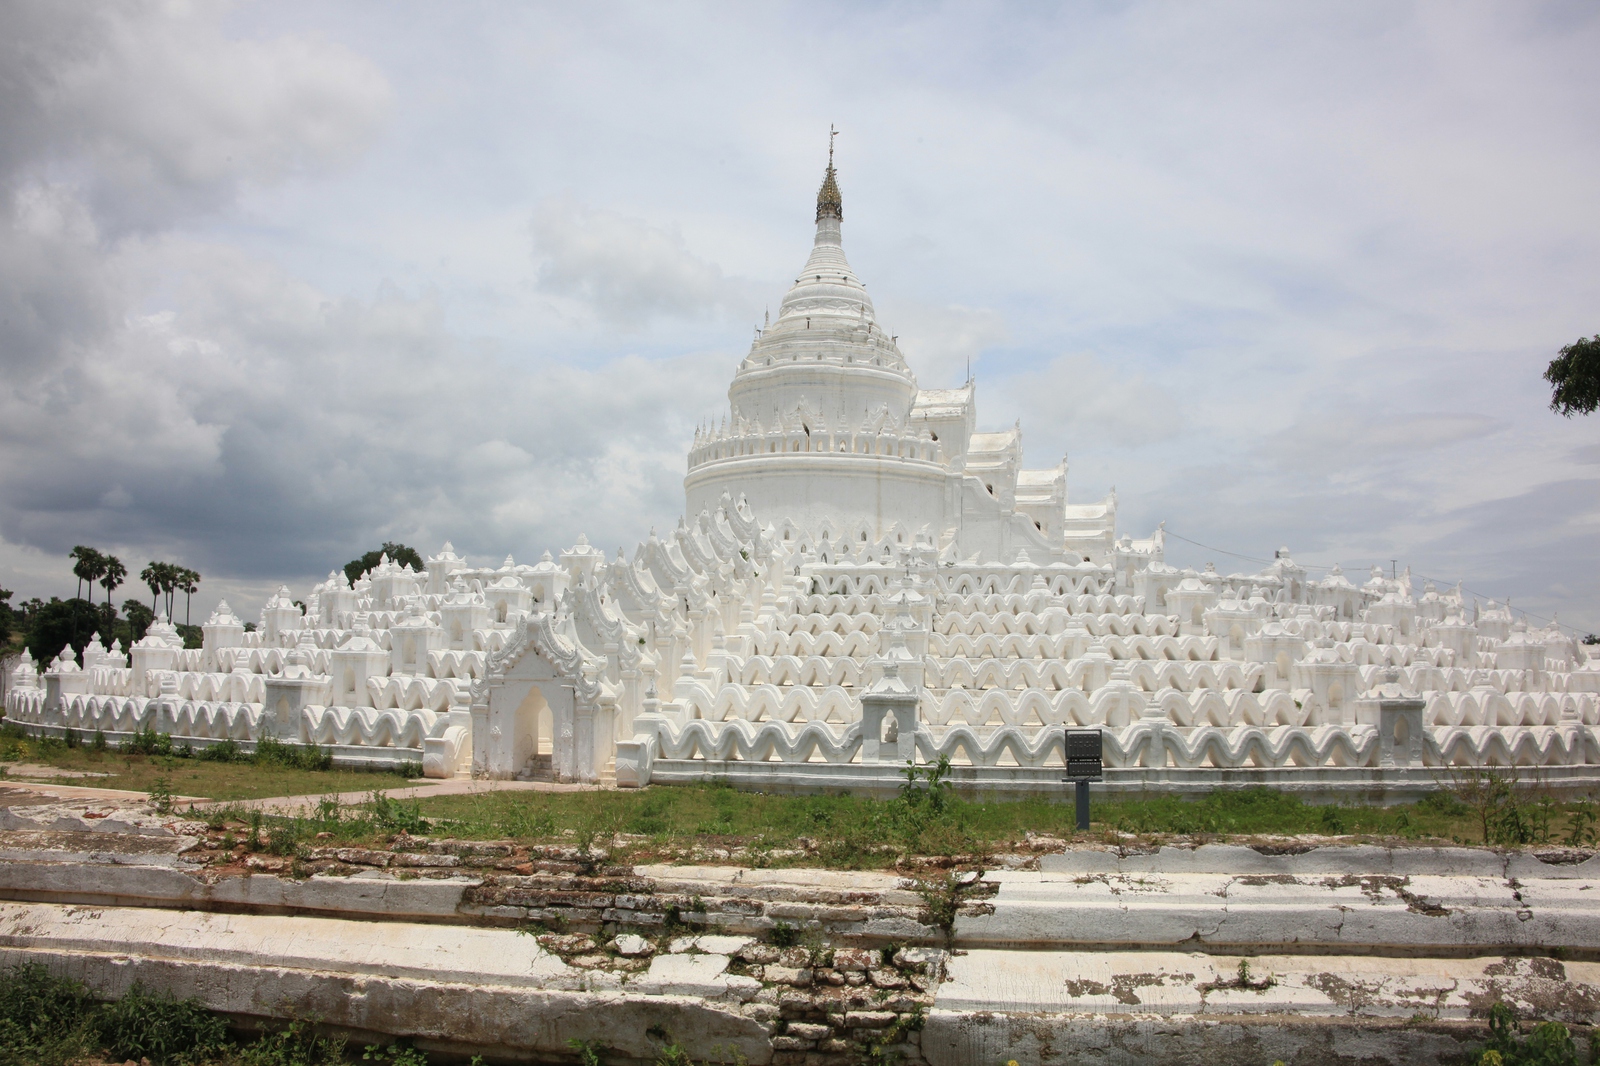 Mingun: Hsinbyume Pagoda